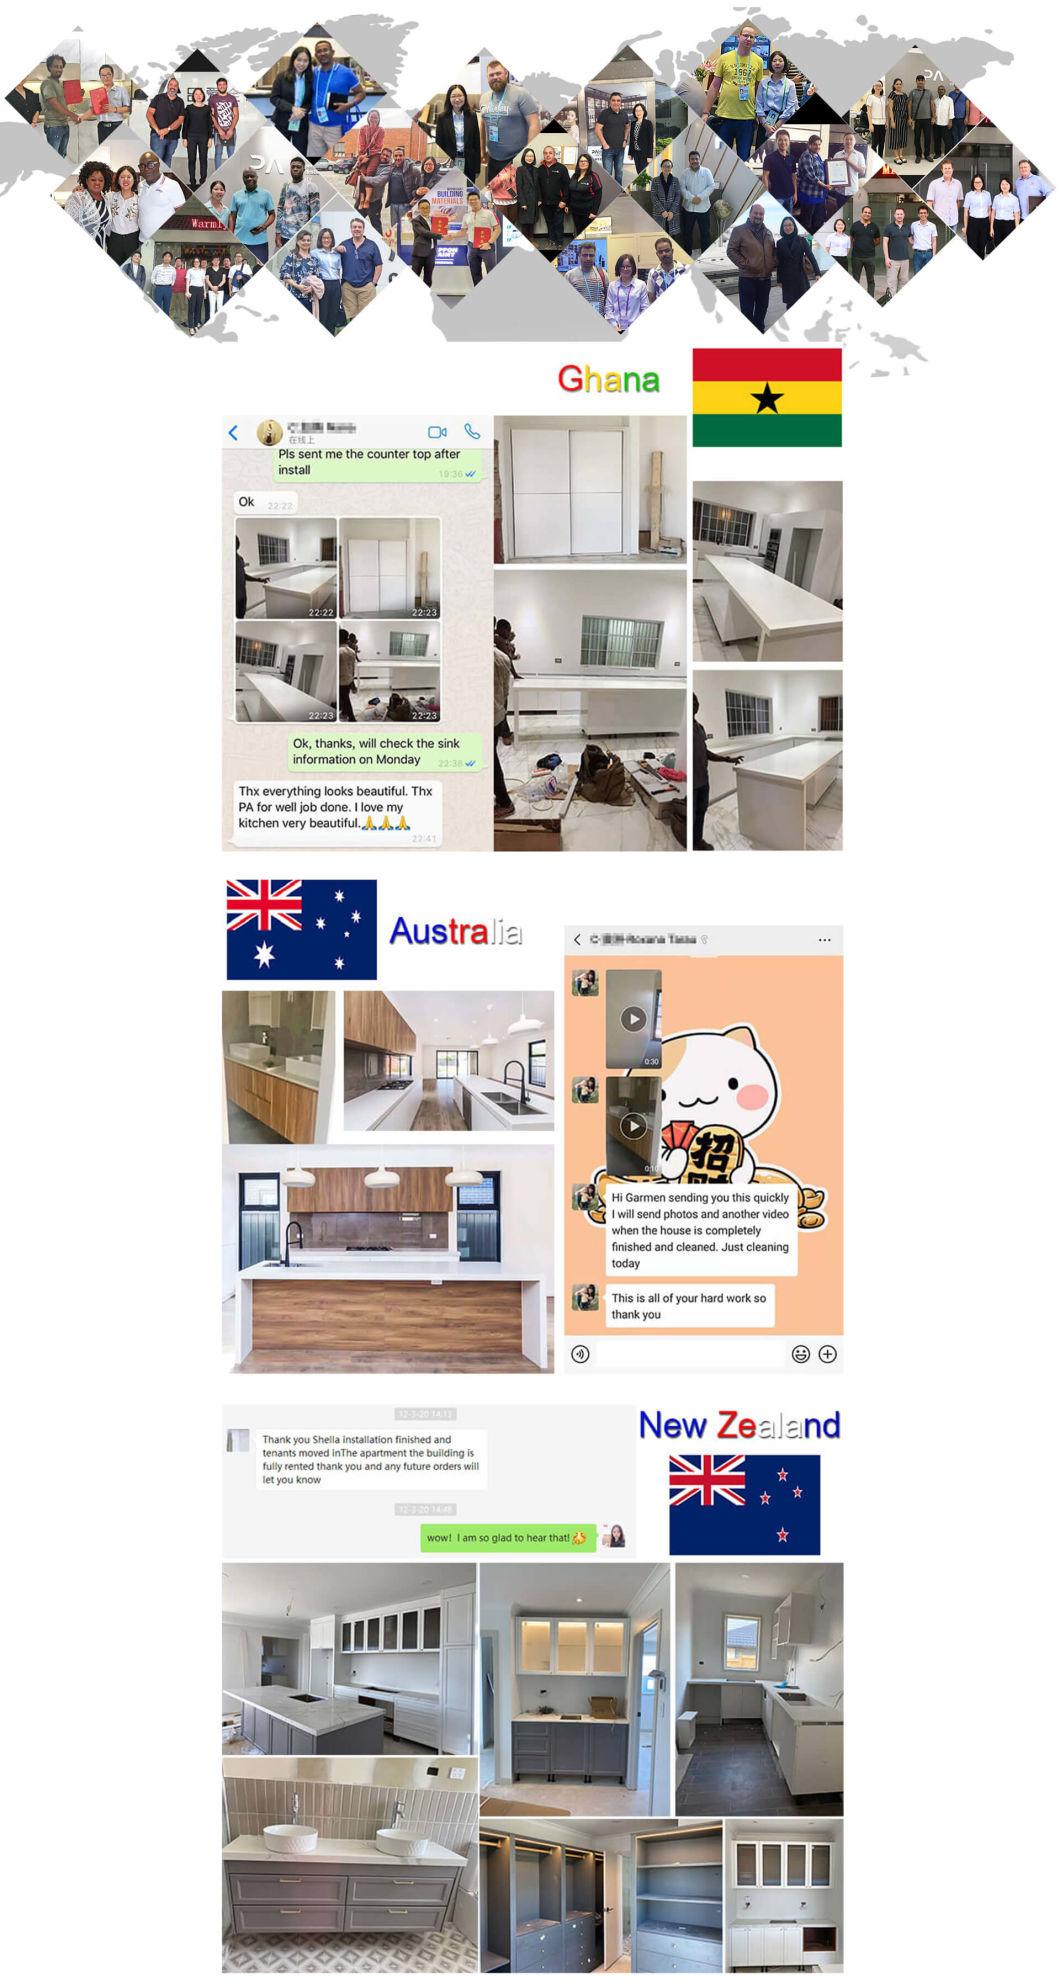 PA Free Customized Flat Panel Design PVC High Gloss White Cheap Modular Modern Kitchen Cabinets